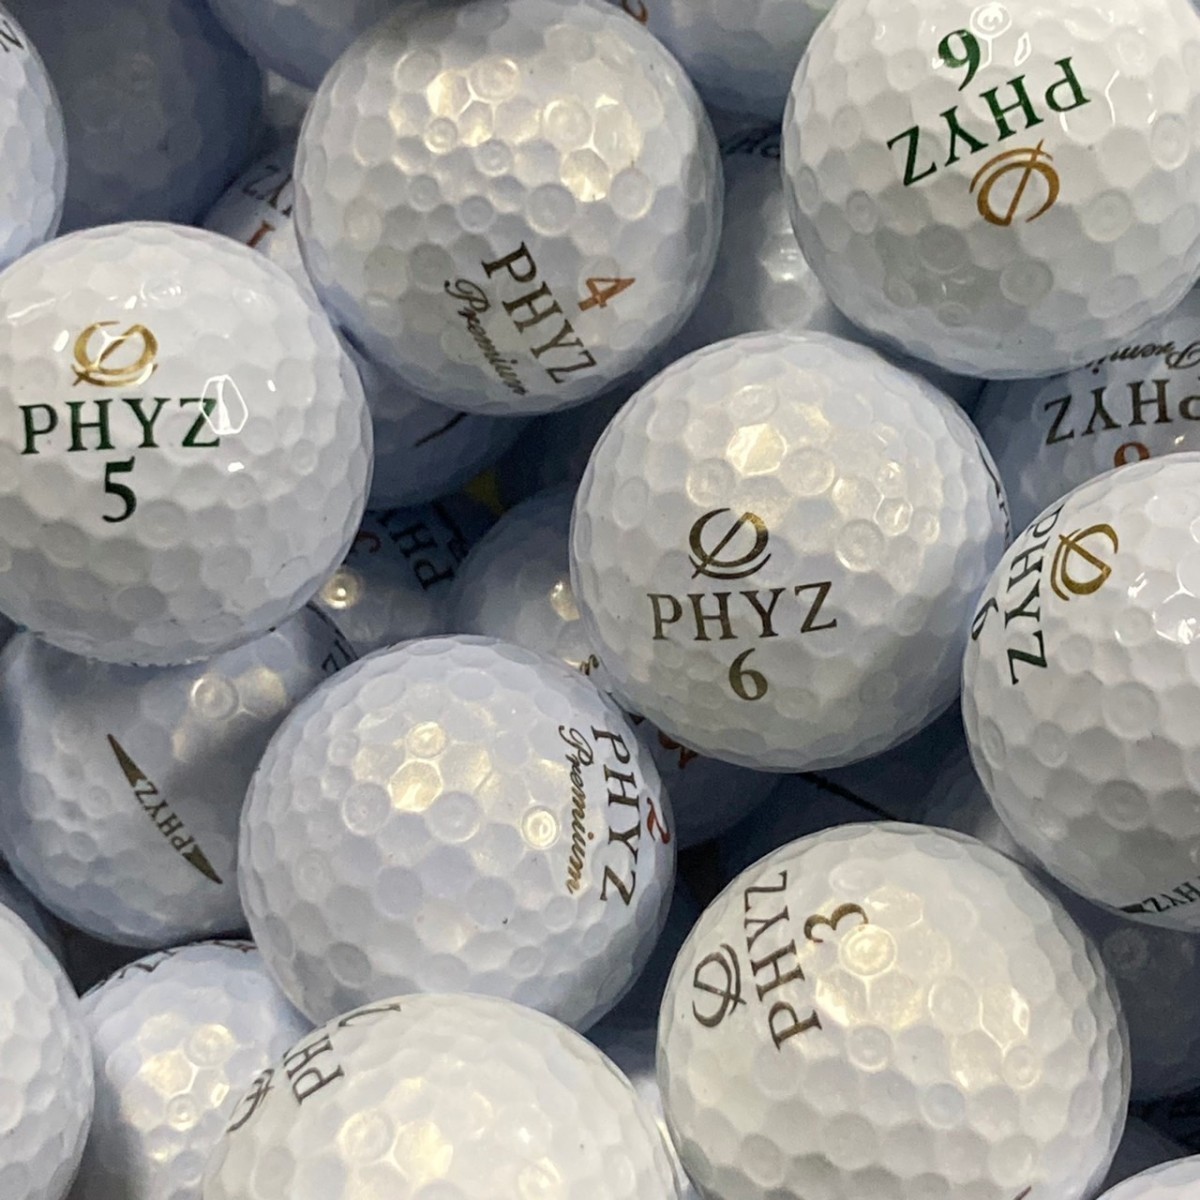 3周年記念イベントが PHYZ ゴルフボール18球